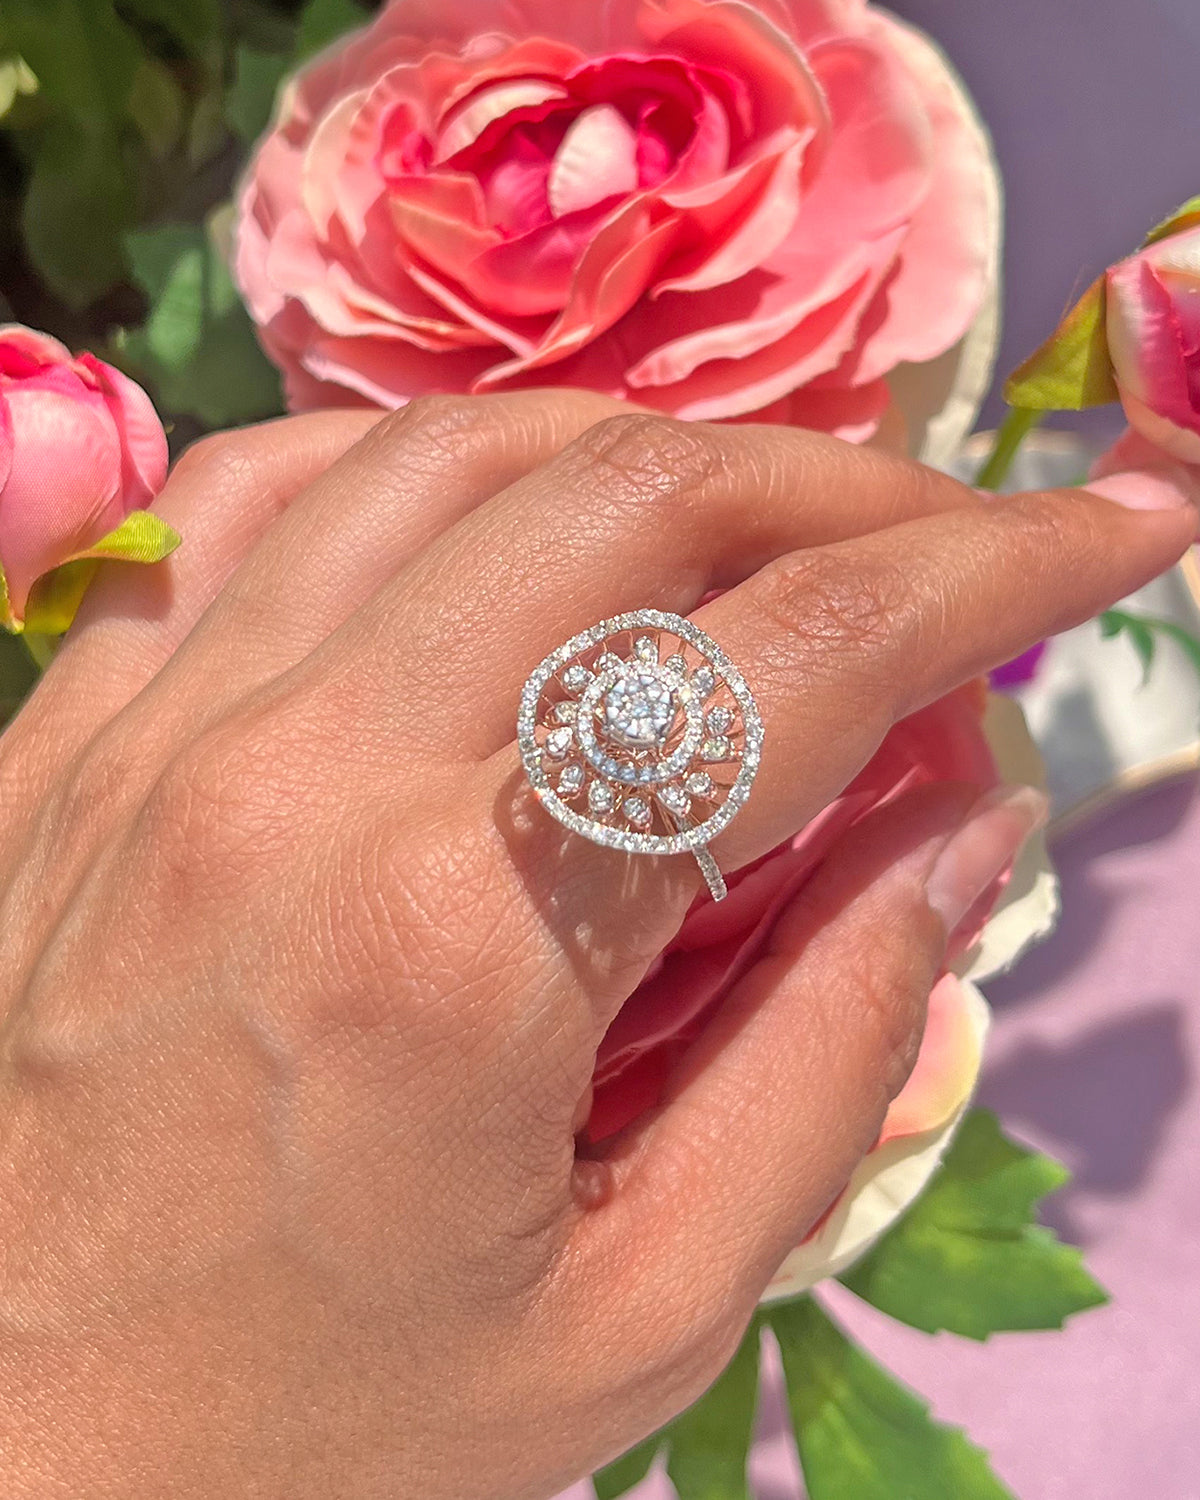 Eleyn Diamond Ring in 14 KT old